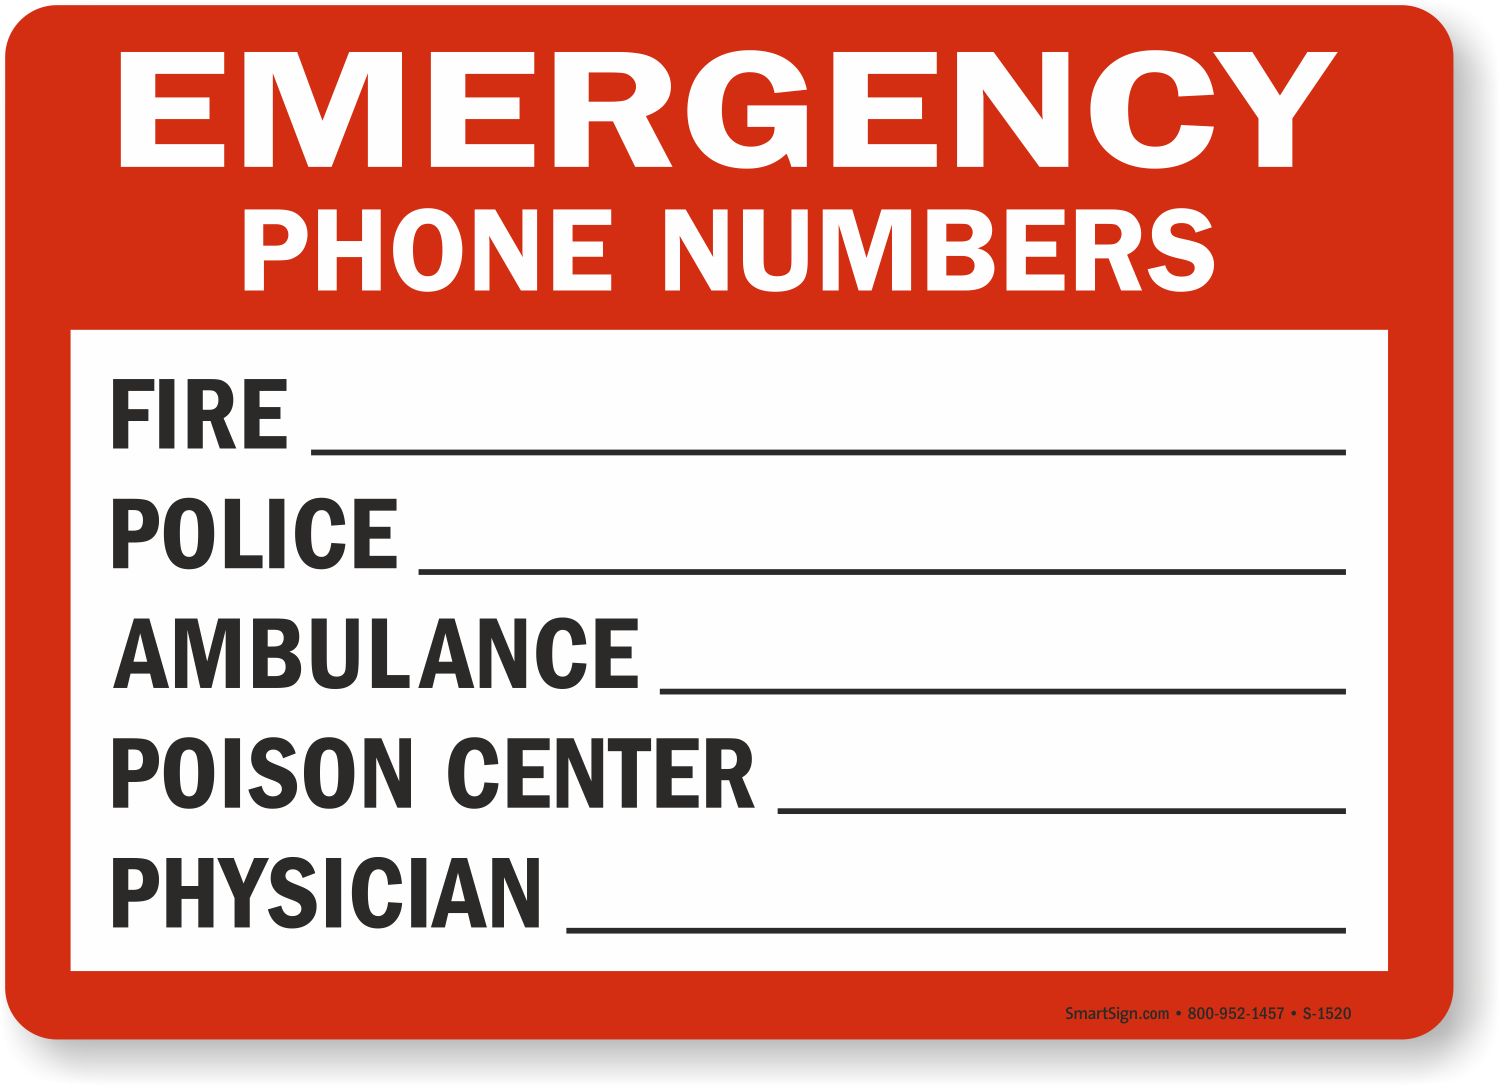 Emergency Phone Numbers Sign, SKU S1520